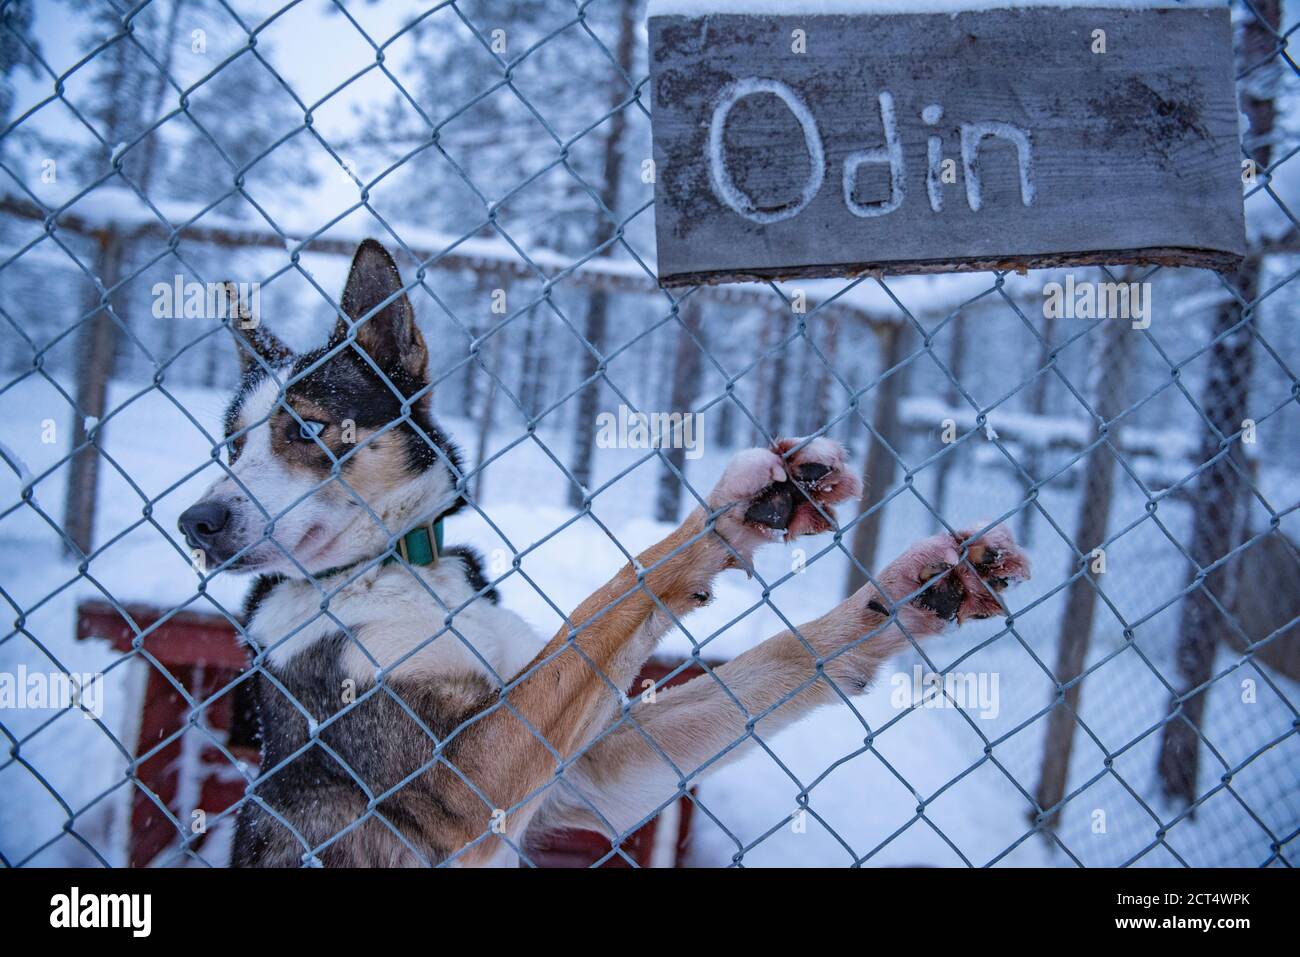 Il cane Husky in attesa di andare in slitta con il cane Husky nel suo allevamento nel freddo inverno neve coperto paesaggio, Torassieppi, Lappland, Finlandia Foto Stock